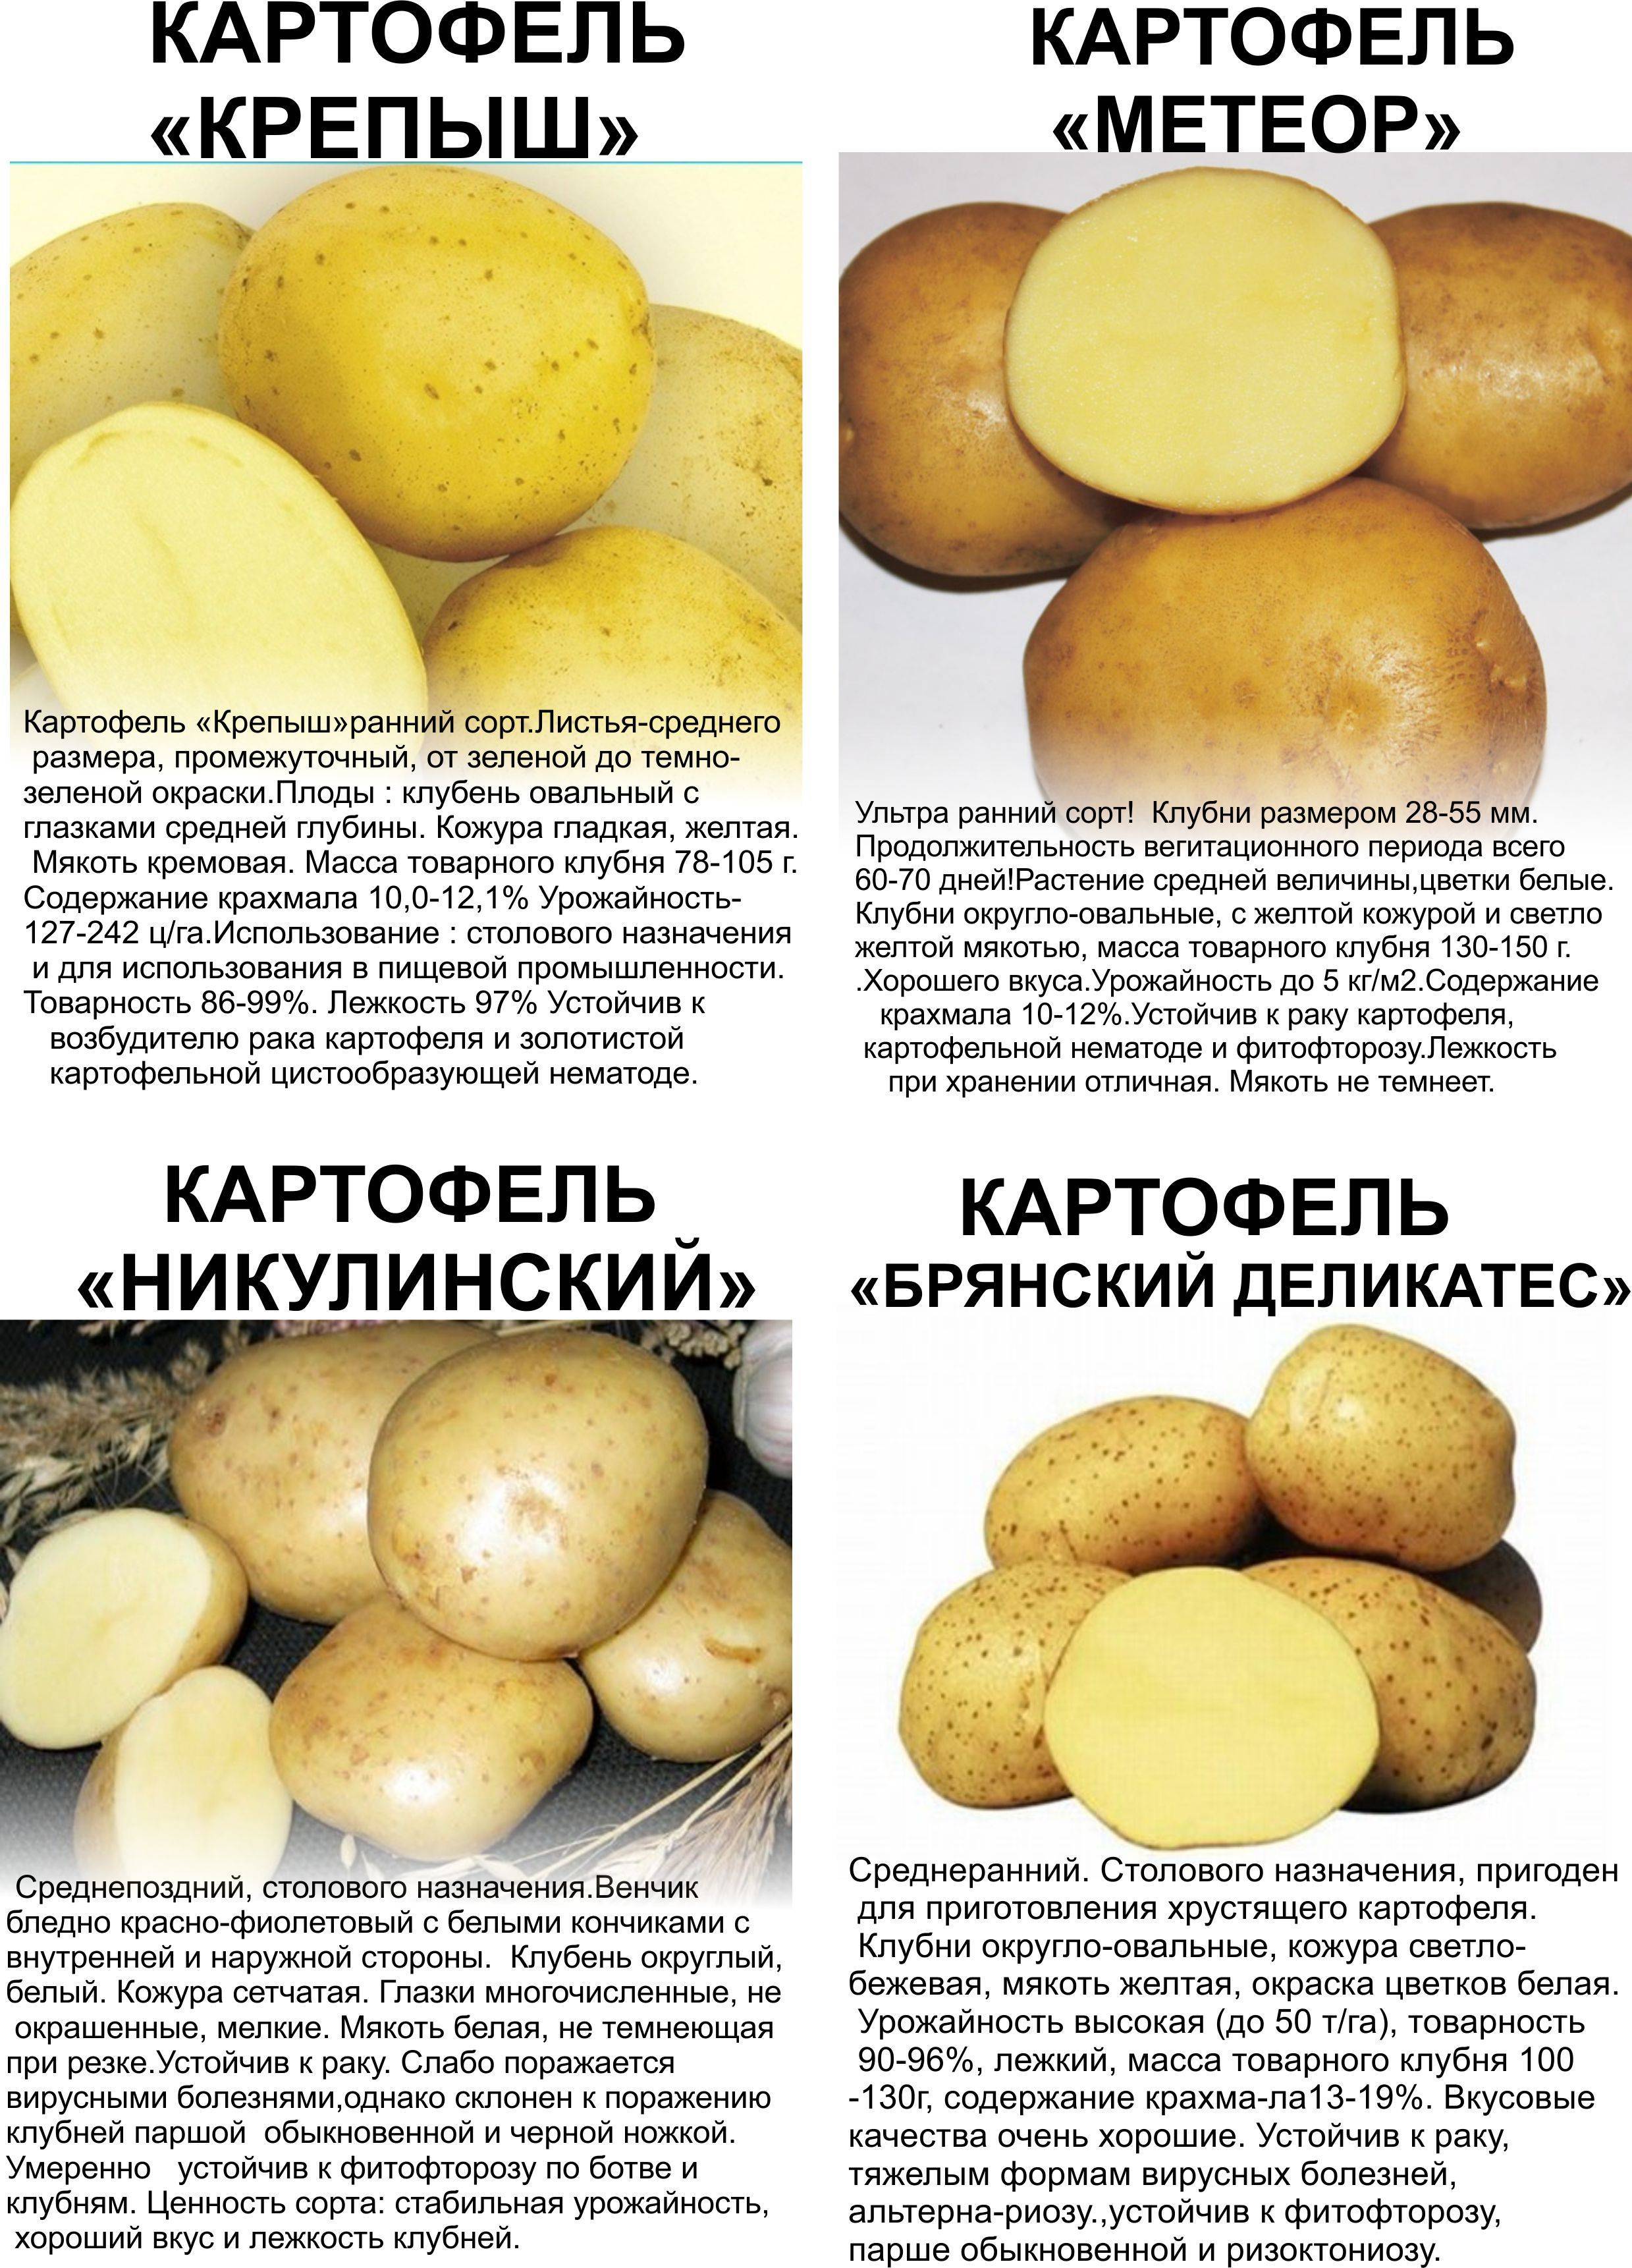 Картофель сорт Крепыш описание сорта